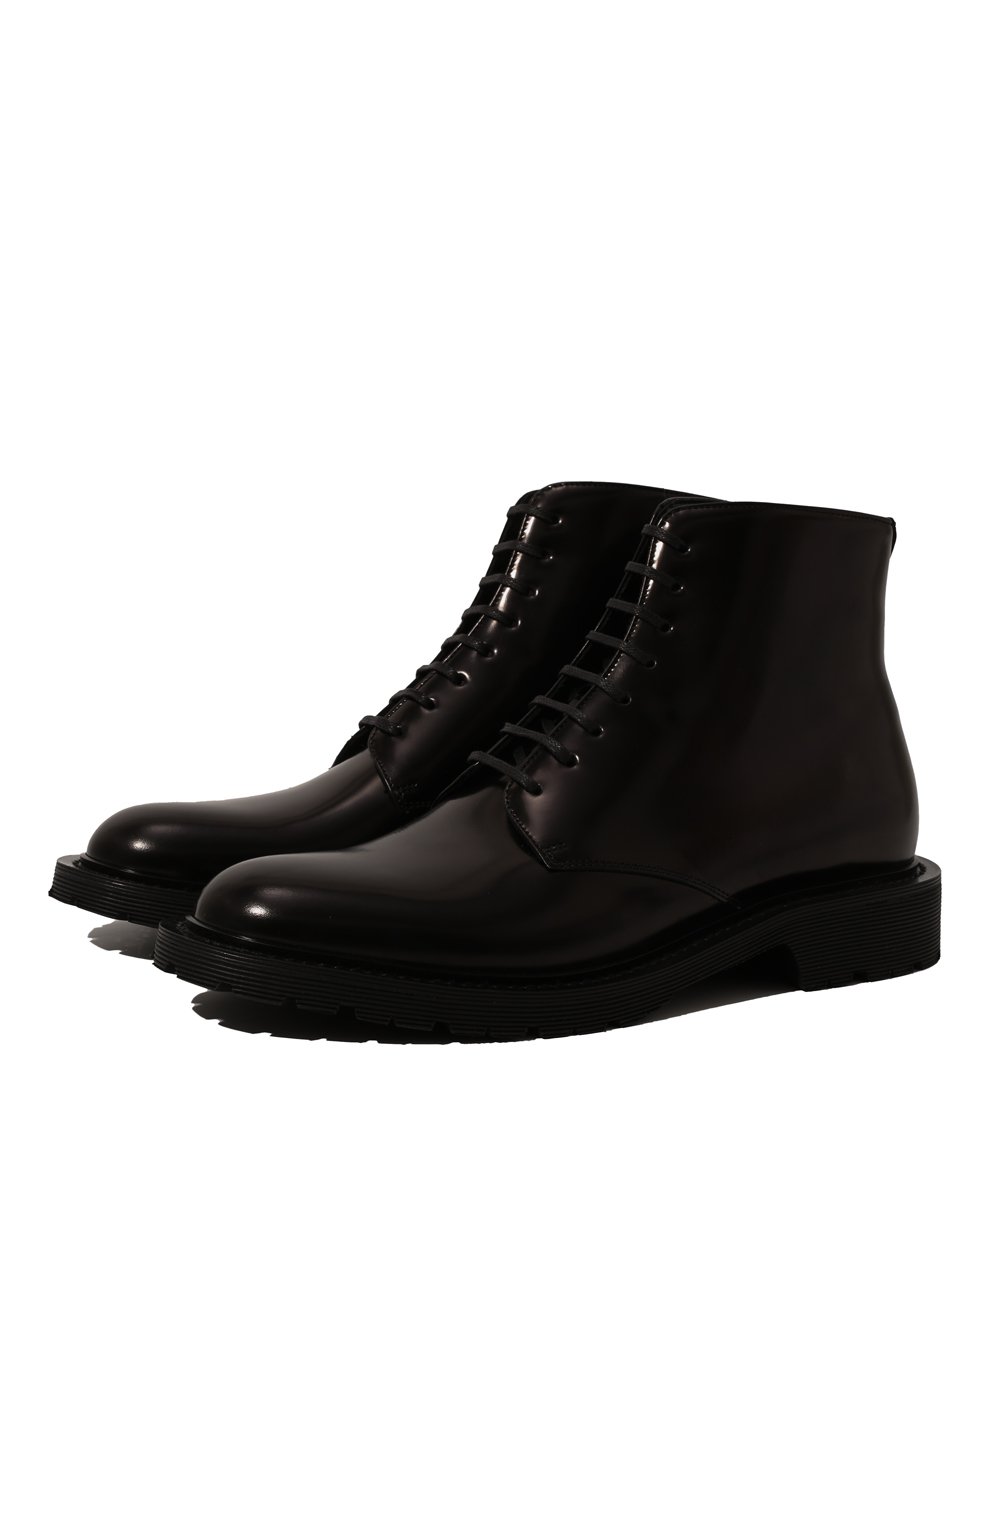 Кожаные ботинки Army Saint Laurent Чёрный 632412/1Y000 5506033